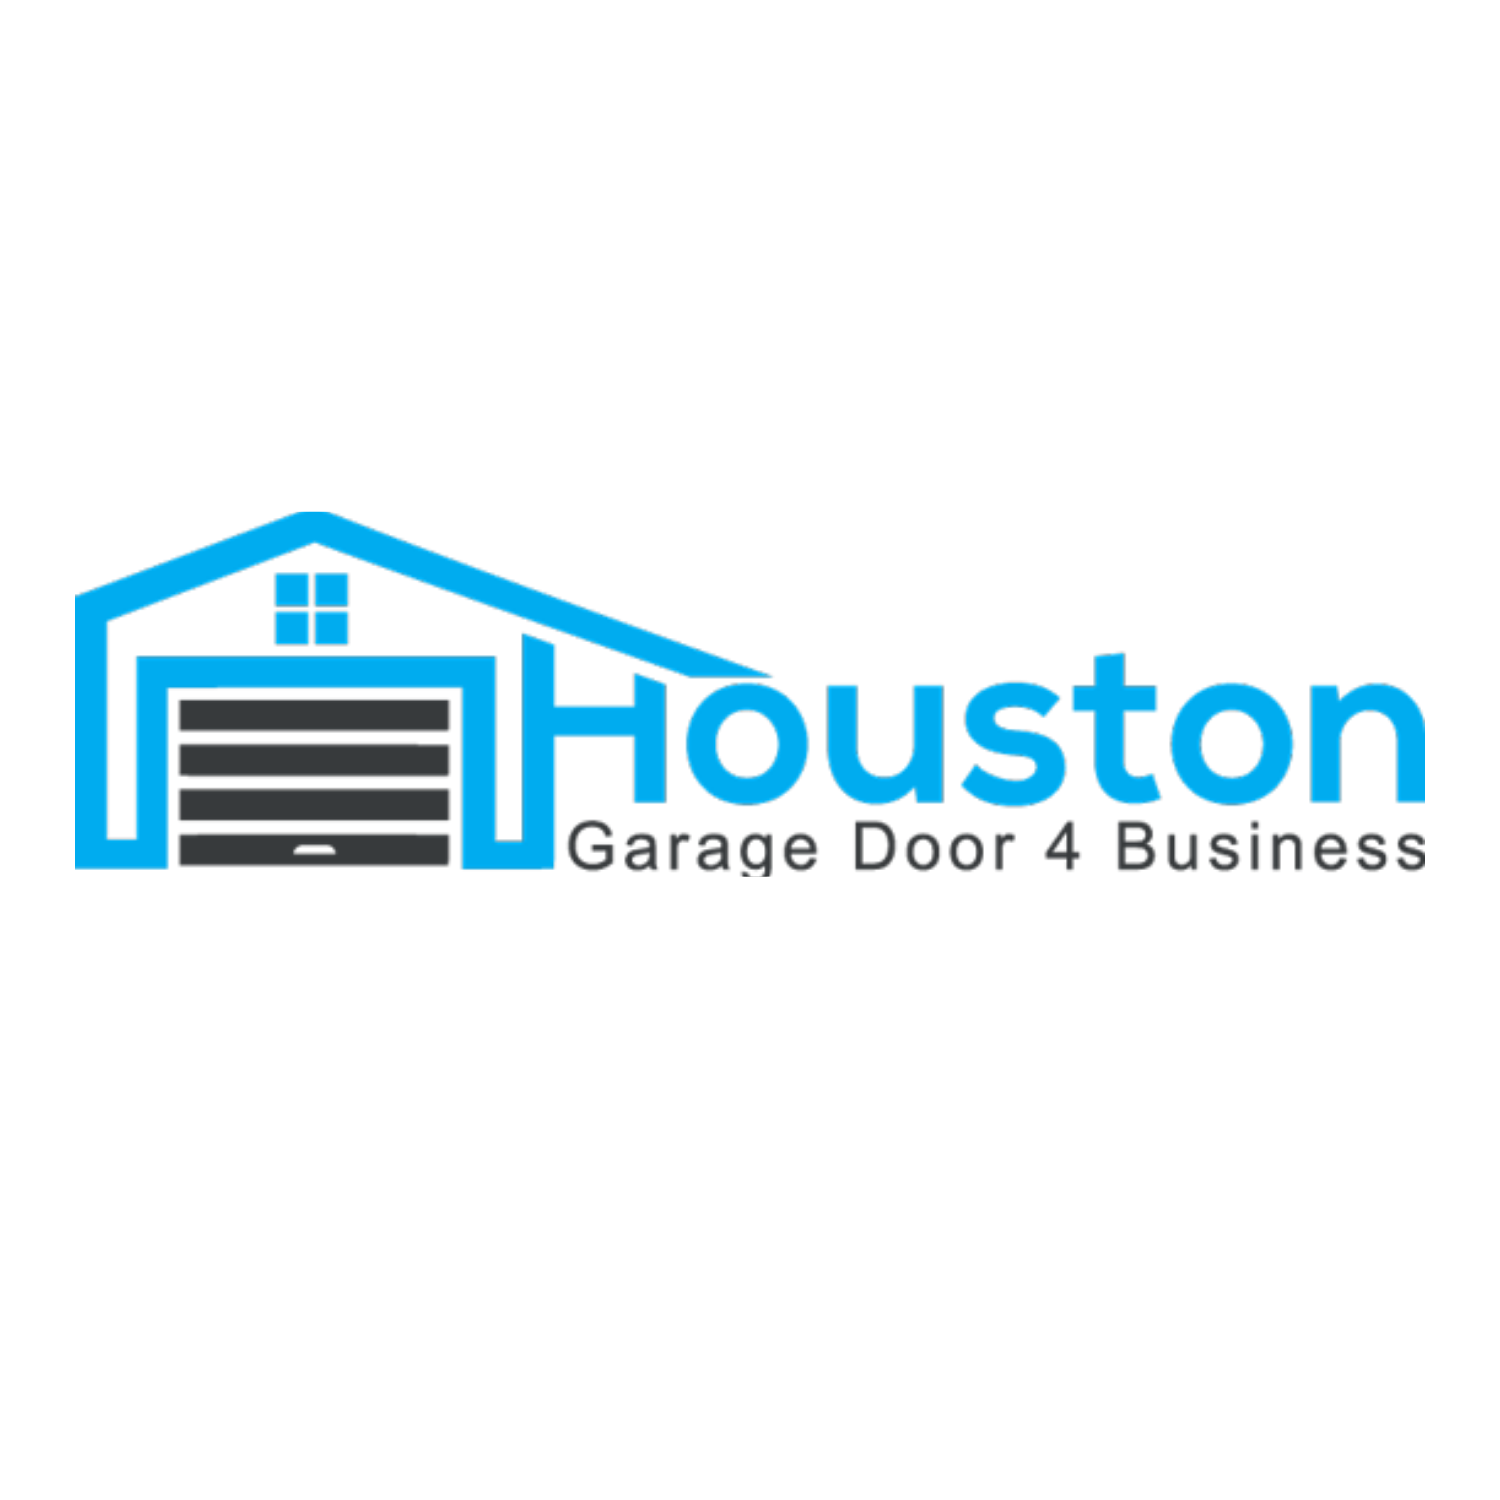 Houston Garage Door 4 Business